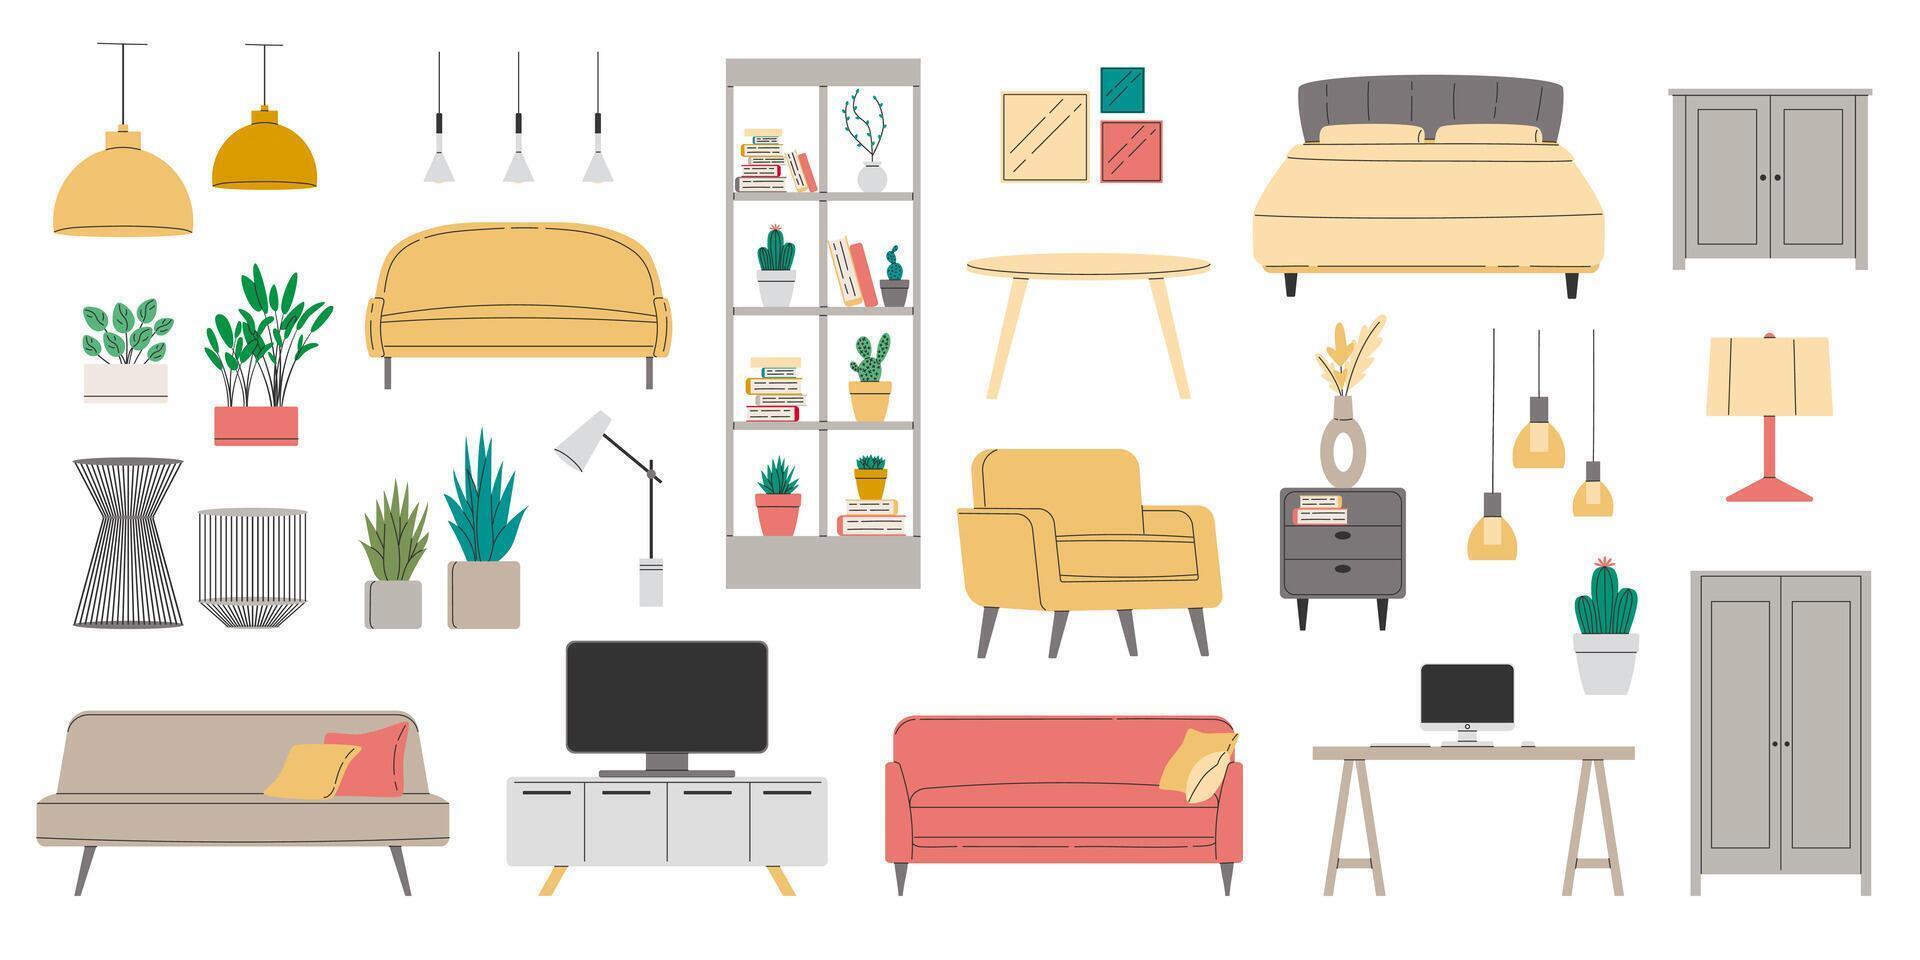 uppsättning av möbel för modern Hem interiör design. samling trendig hus dekor, soffa, stol, fåtölj, säng, bedside tabell, tabell i platt stil. lägenhet rum föremål. vektor illustration